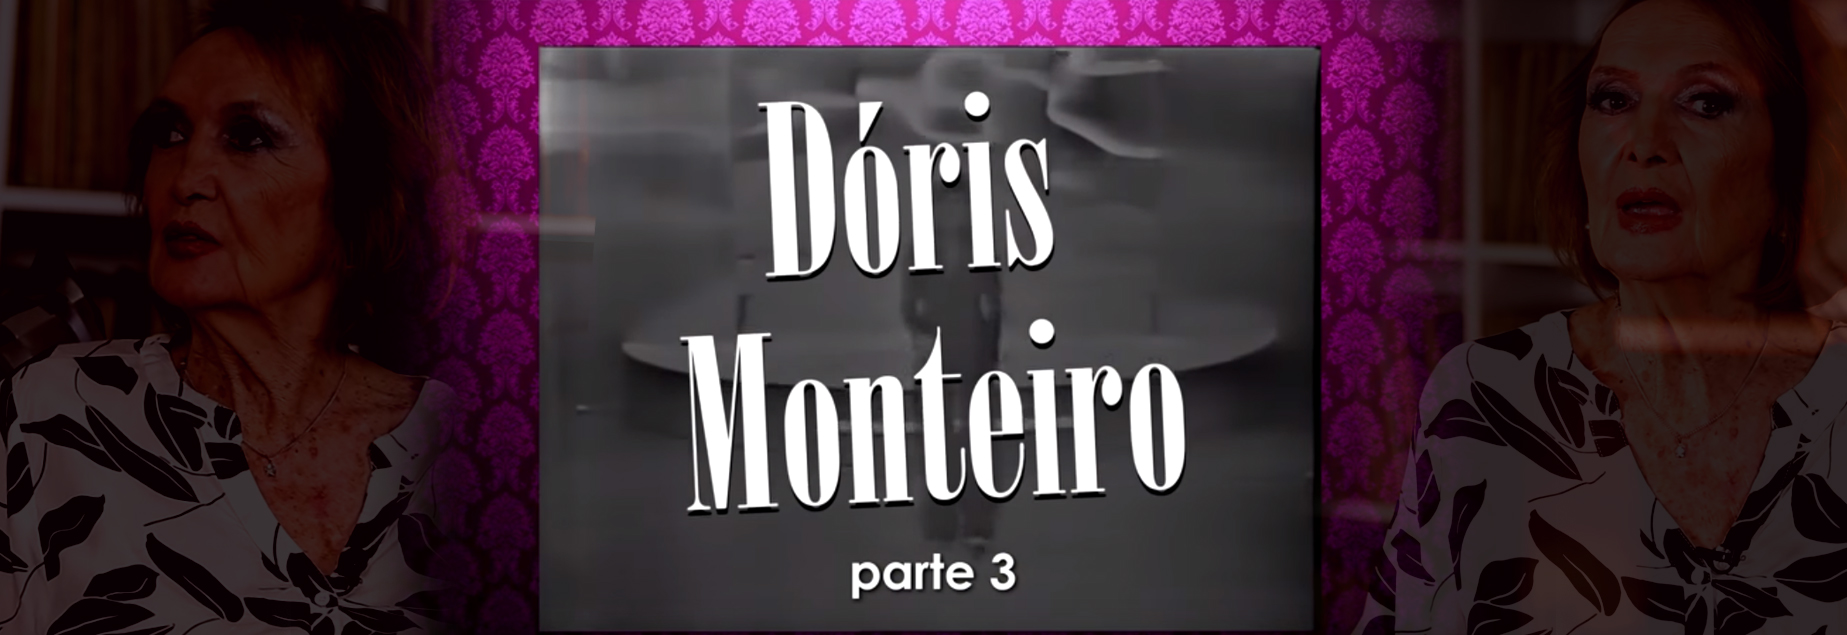 Dóris Monteiro Canta e Conta Seu Repertório Moderno dos Anos 60, 70 e 80 (parte 3)